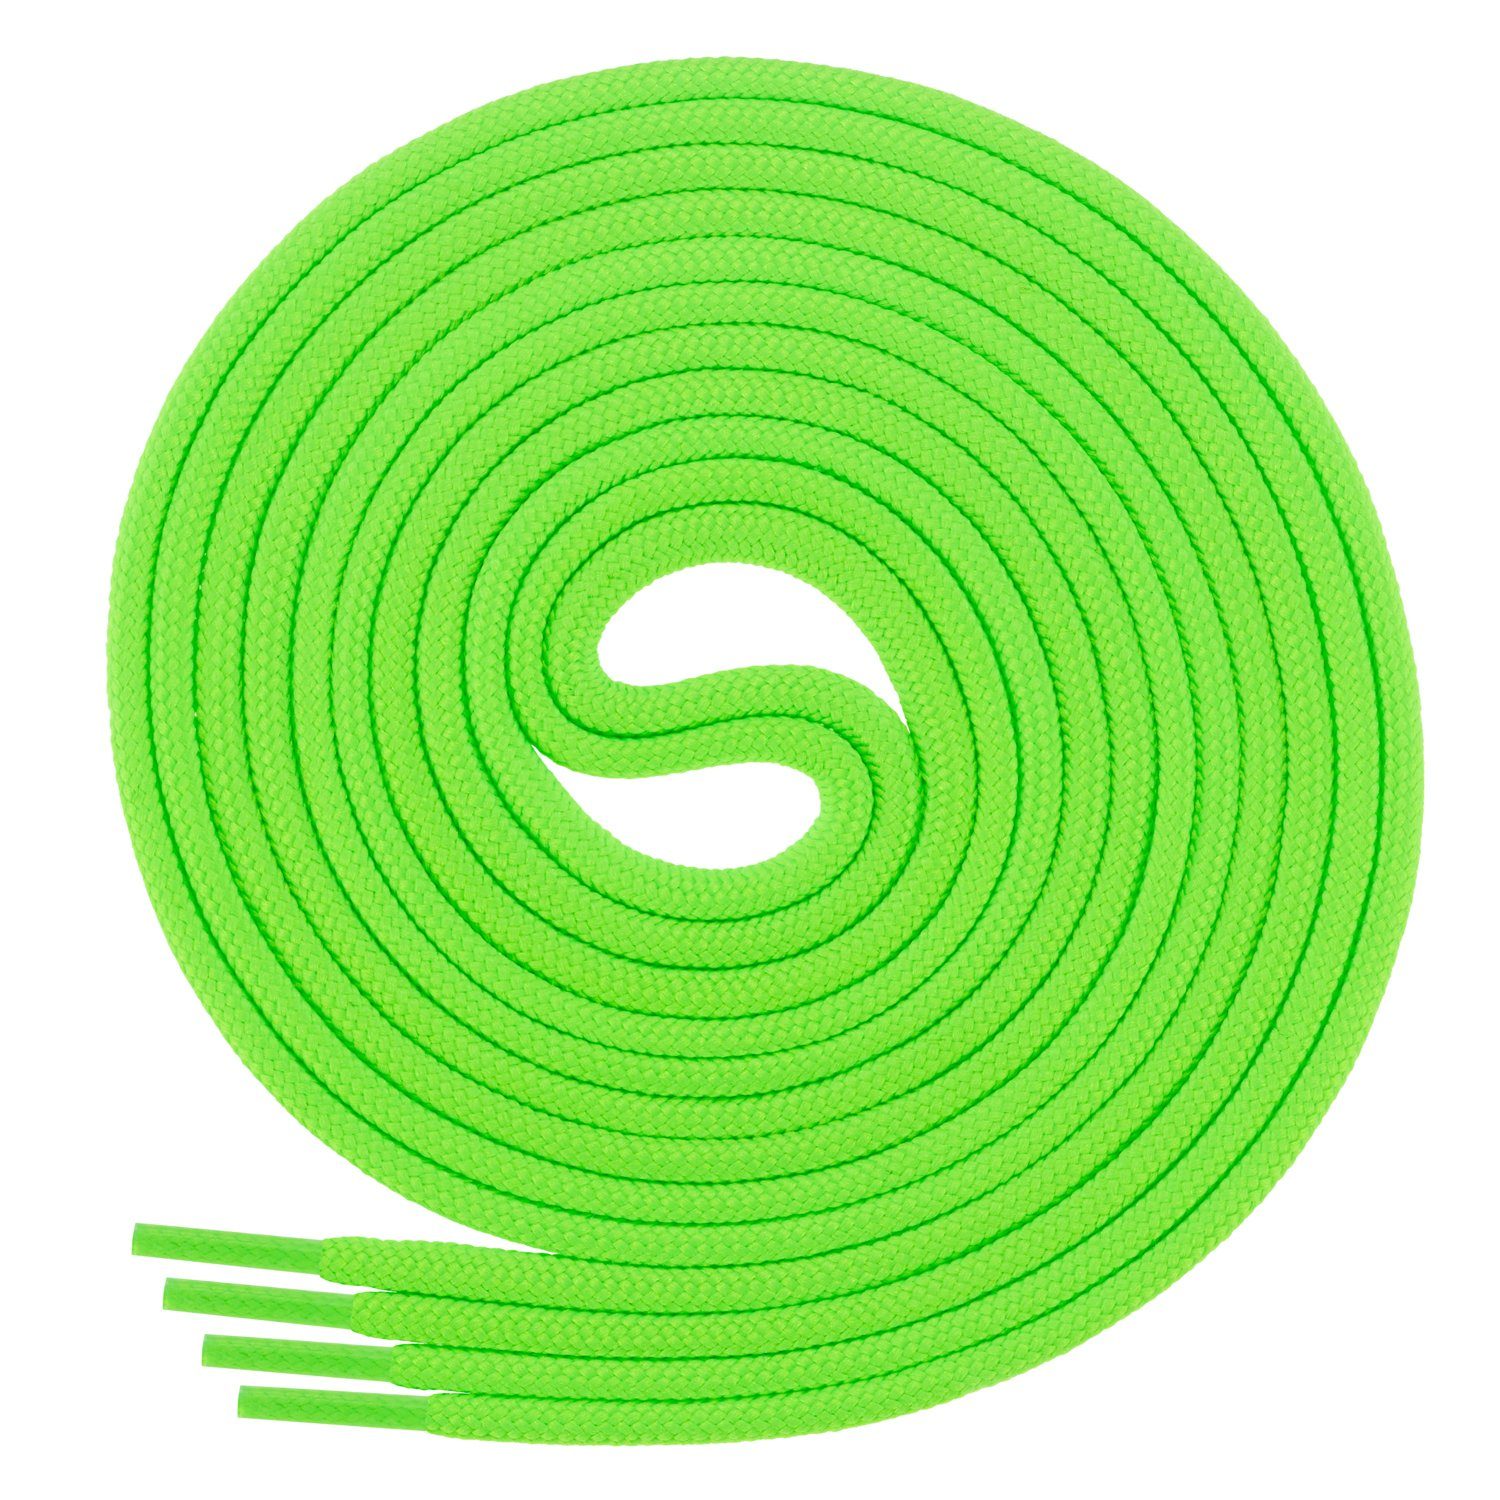 Di Ficchiano Schnürsenkel 1Paar runde Schnürsenkel ø 3mm für Business- und Lederschuhe, reißfest Neongrün